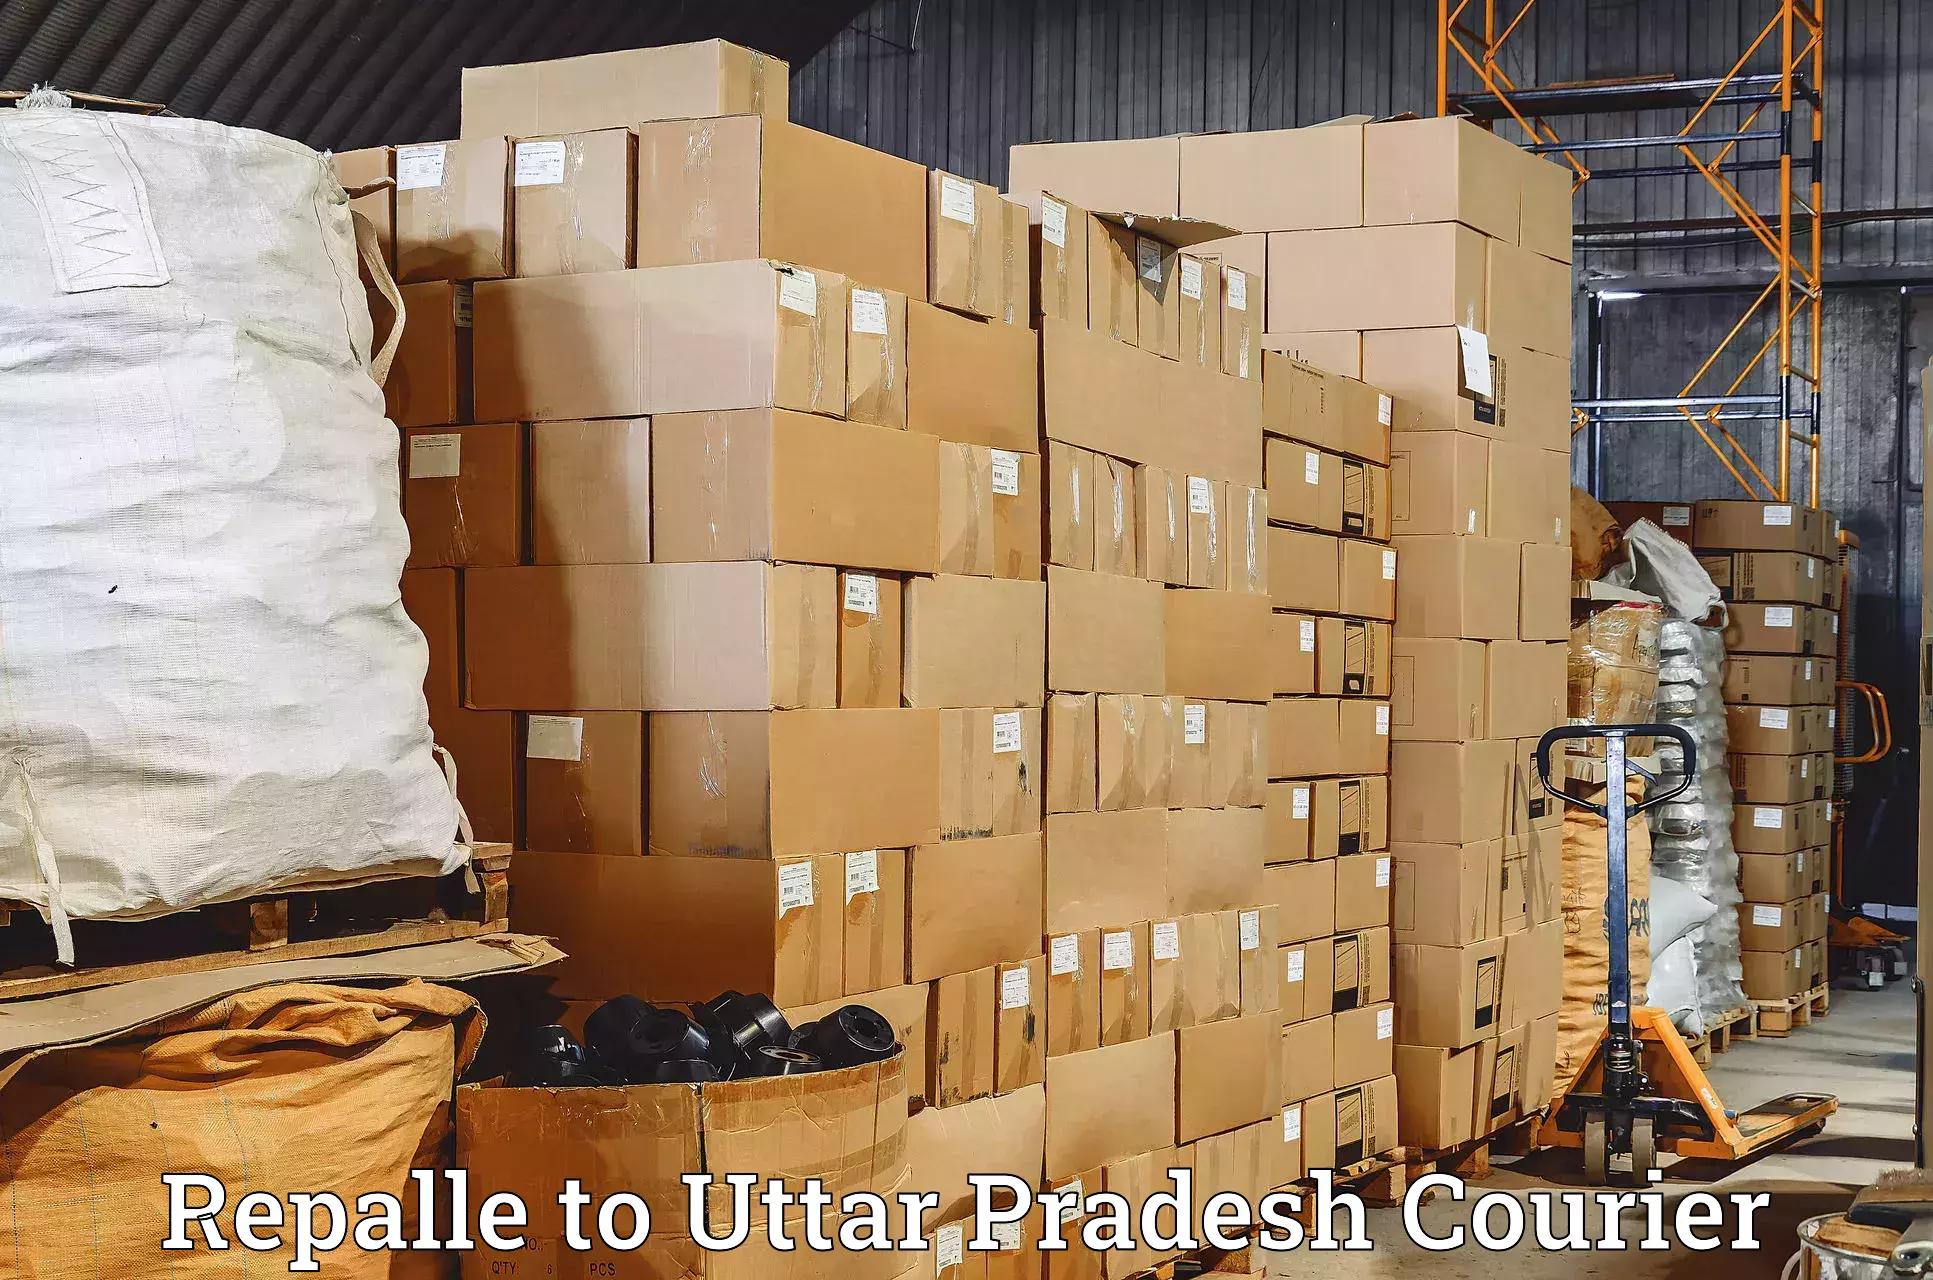 Efficient freight service Repalle to Thakurdwara